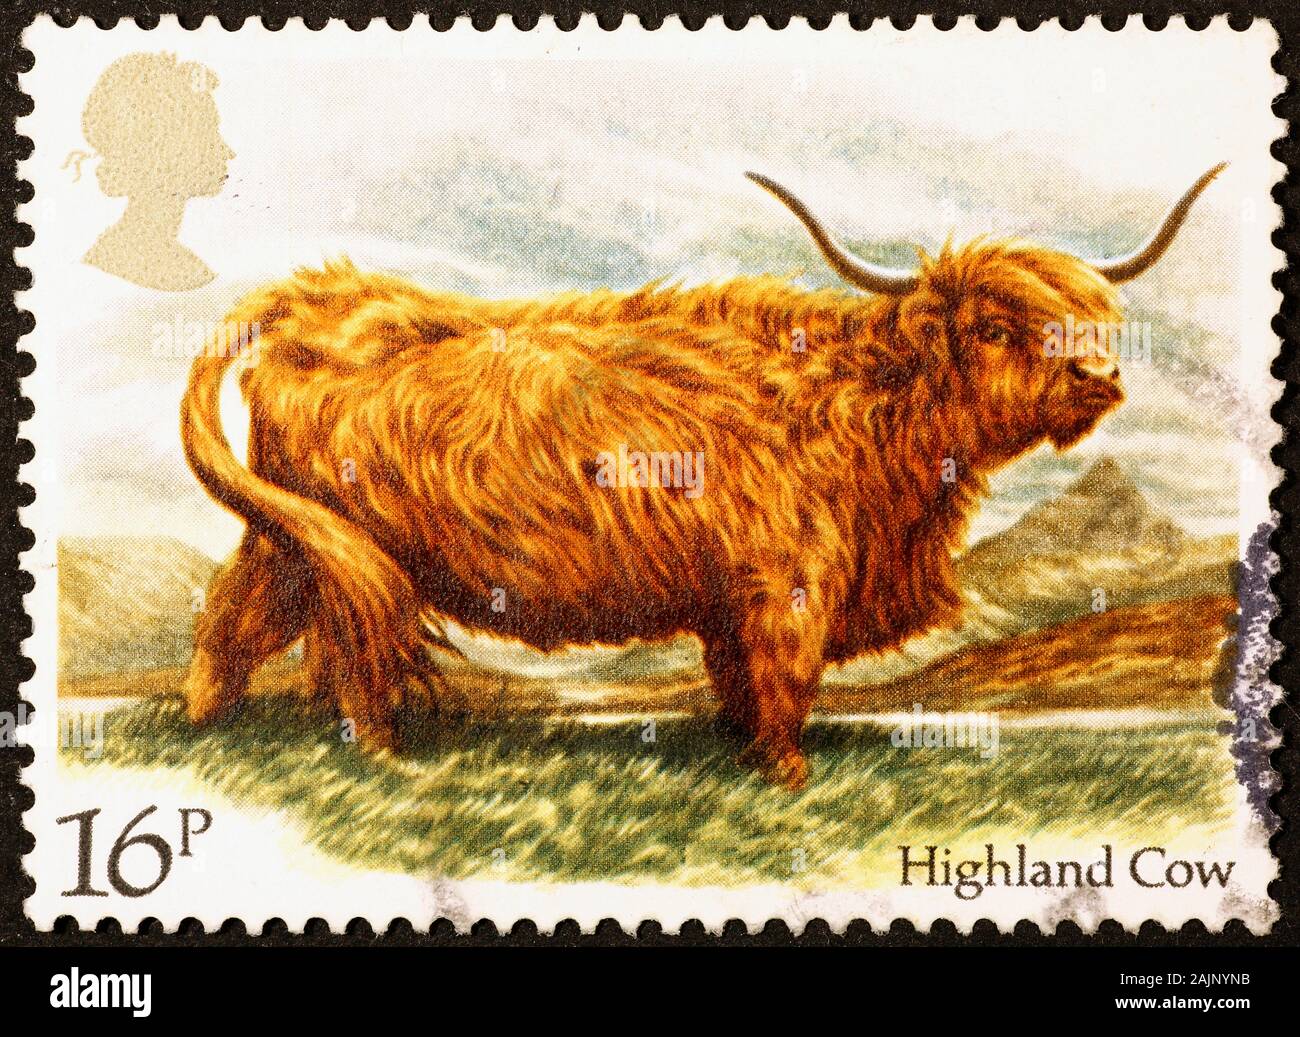 Highland mucca britannica sul francobollo Foto Stock